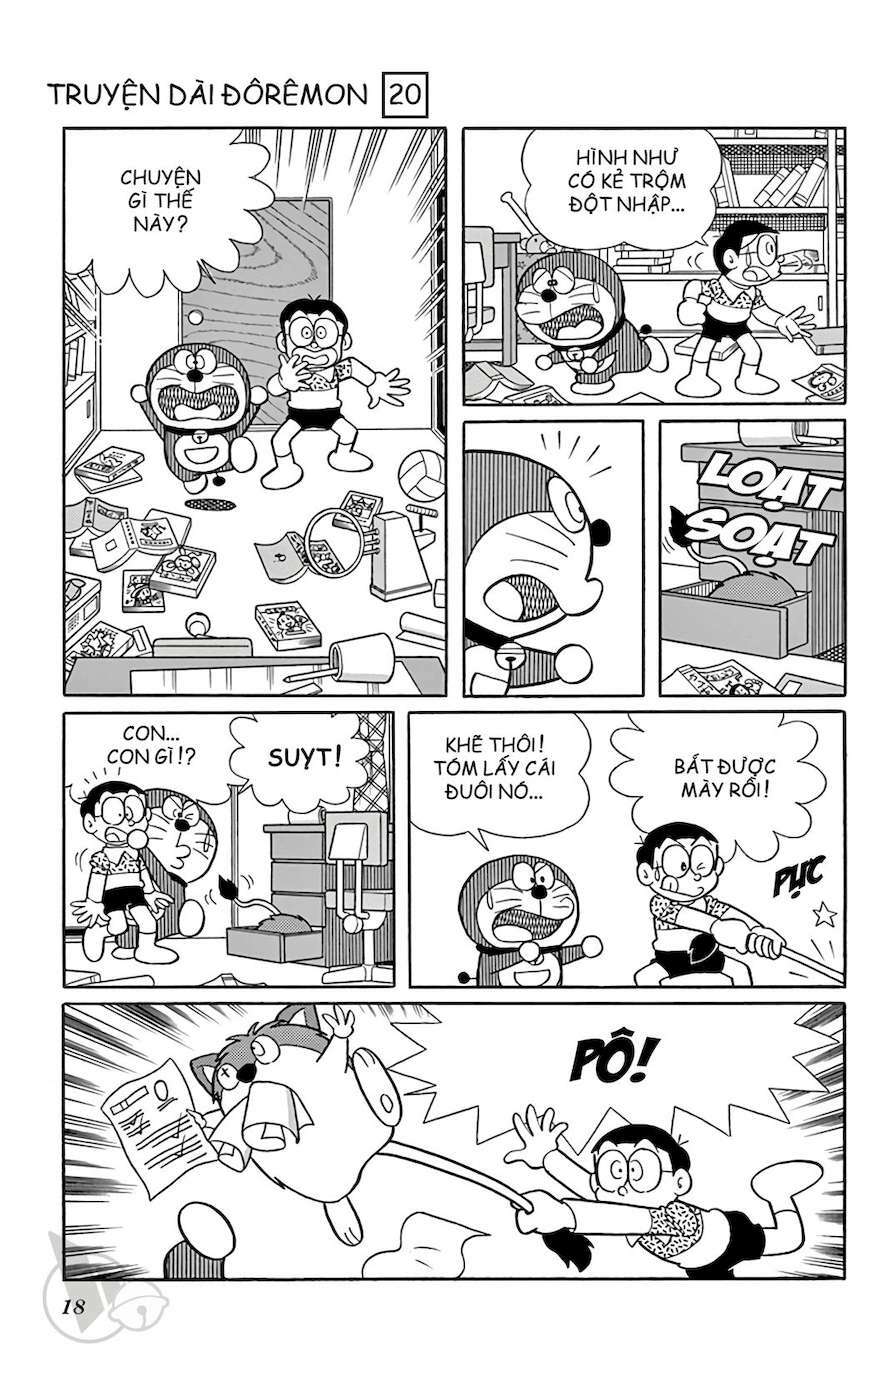 Truyện Tranh Doraemon: Truyền Thuyết Về Vua Mặt Trời Nôbita trang 17